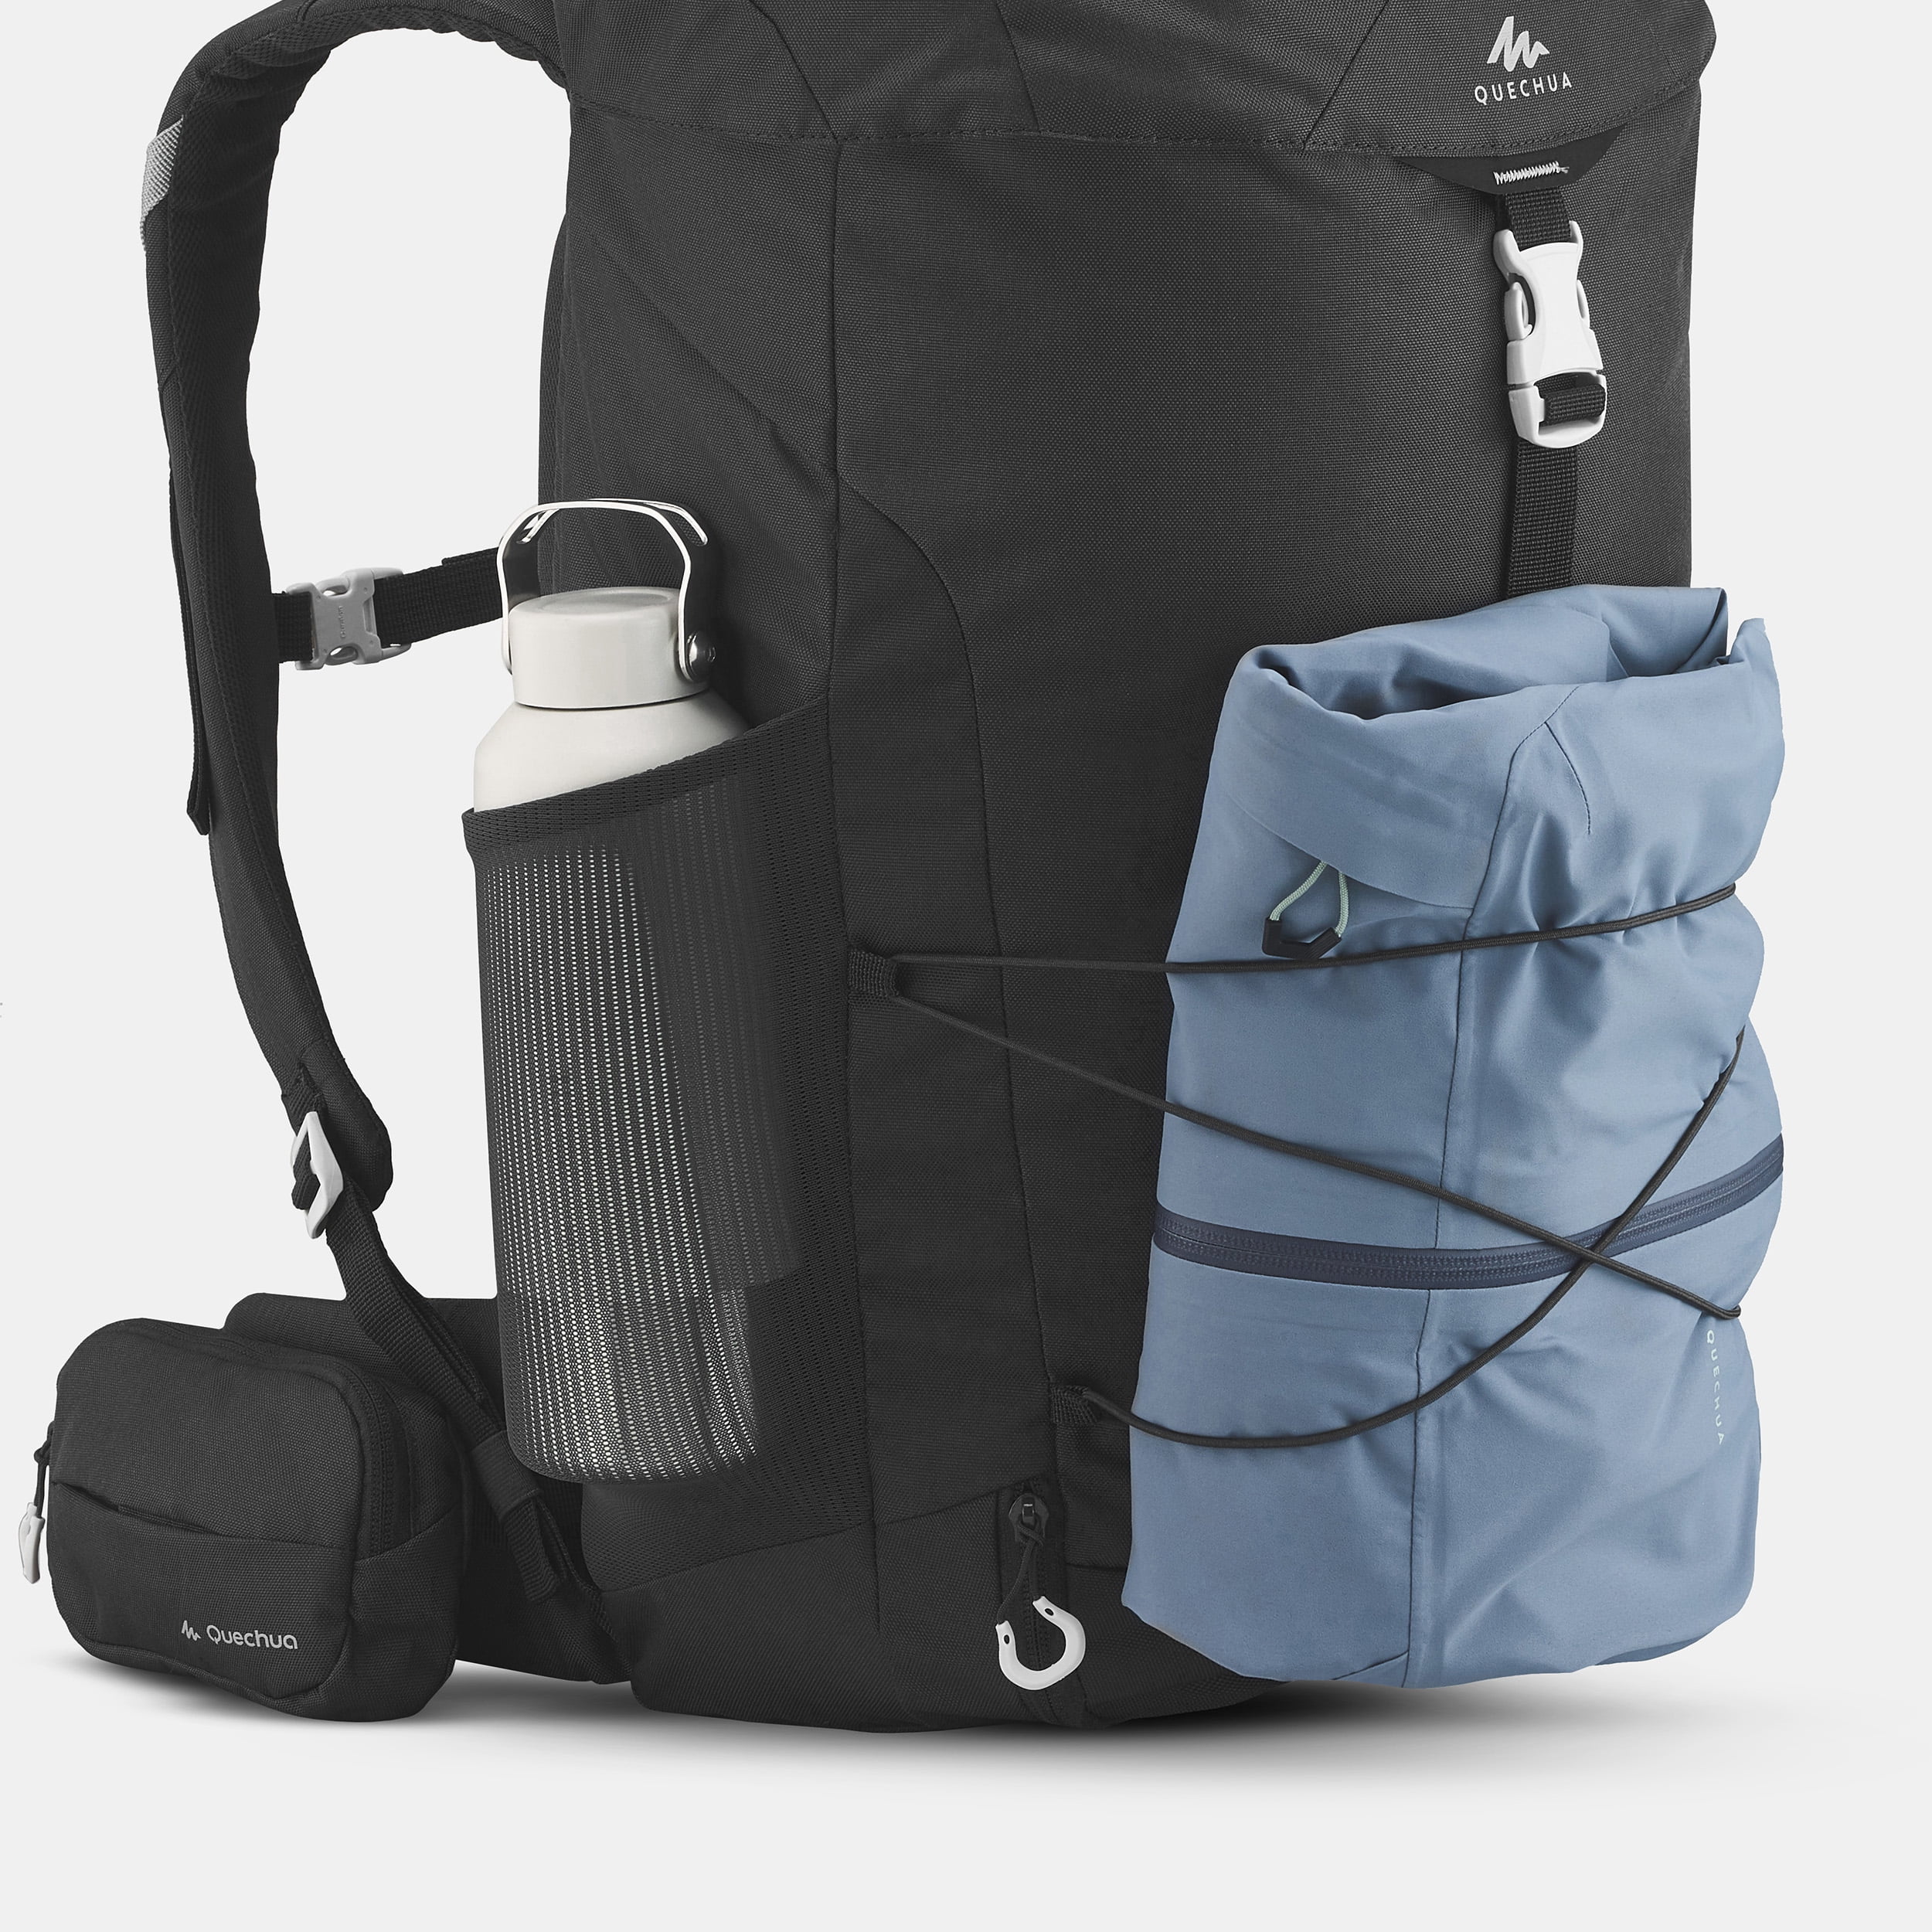 QUECHUA ARPENAZ 30 Black Backpack Rucksack Bag 30L £14.99 - PicClick UK